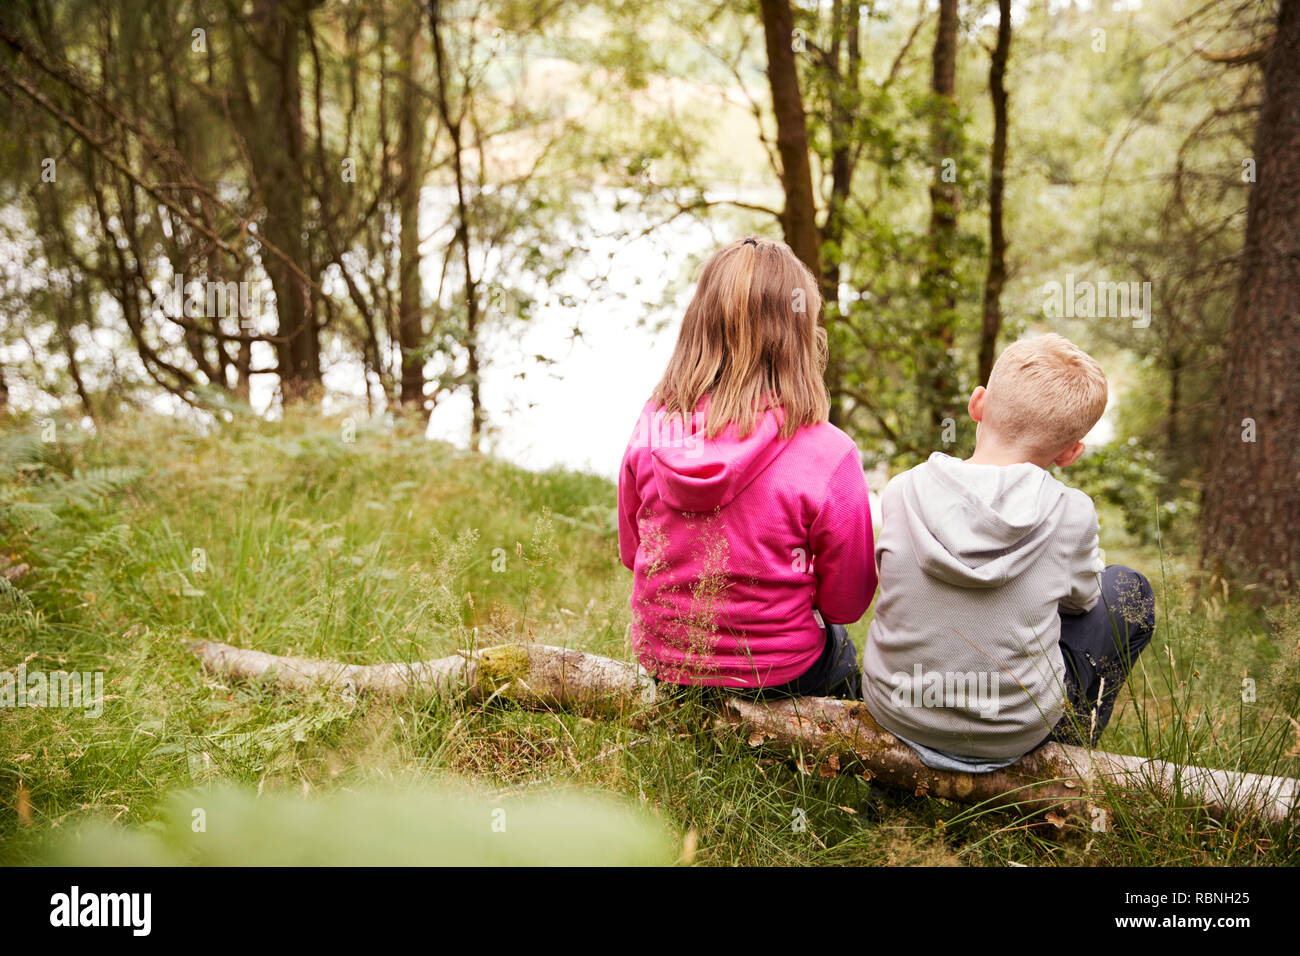 Fille et garçon assis ensemble sur un arbre tombé dans une forêt, vue arrière Banque D'Images